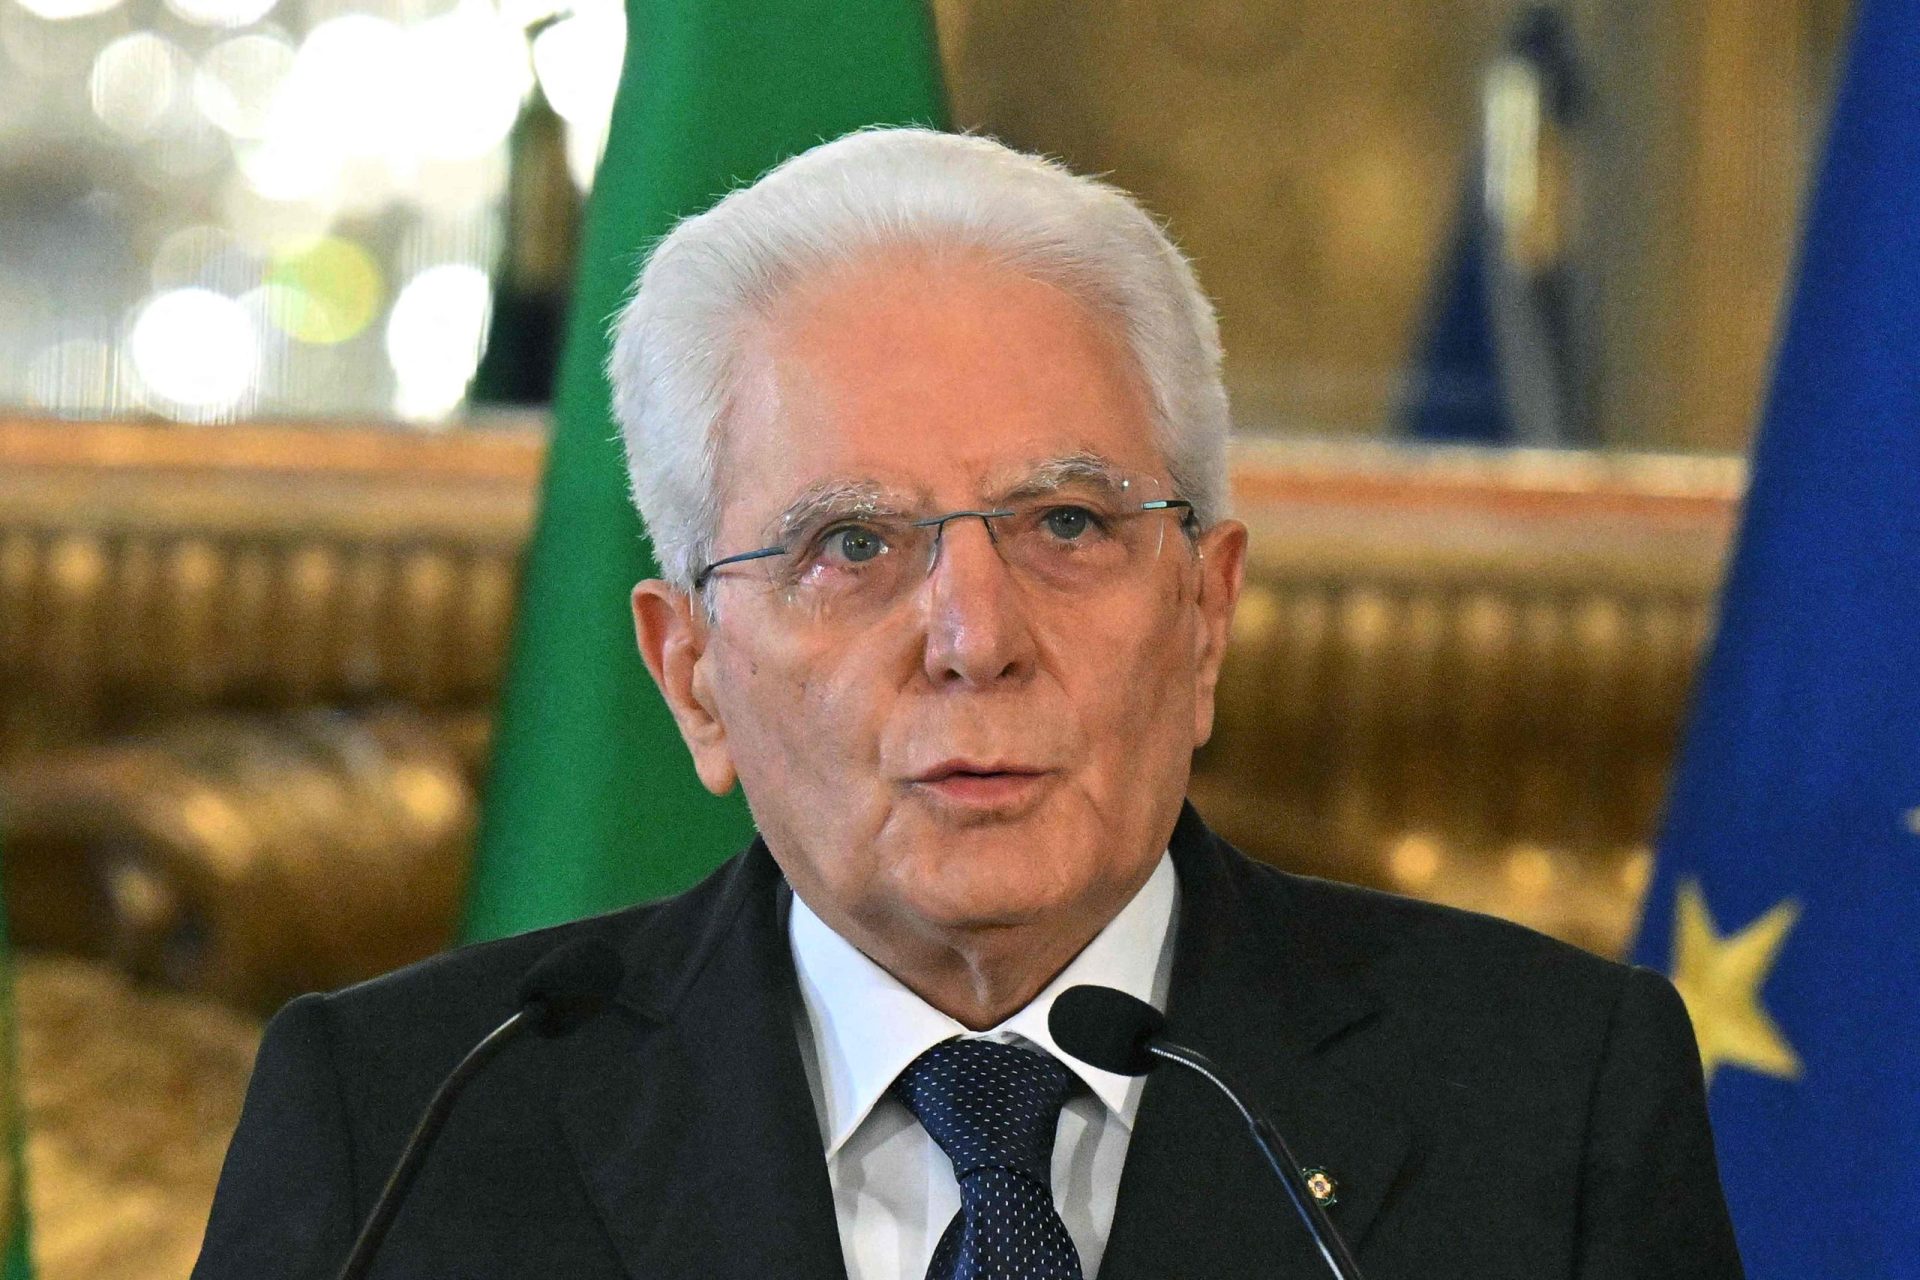 Itália. Presidente dissolve parlamento e Itália irá para eleições antecipadas